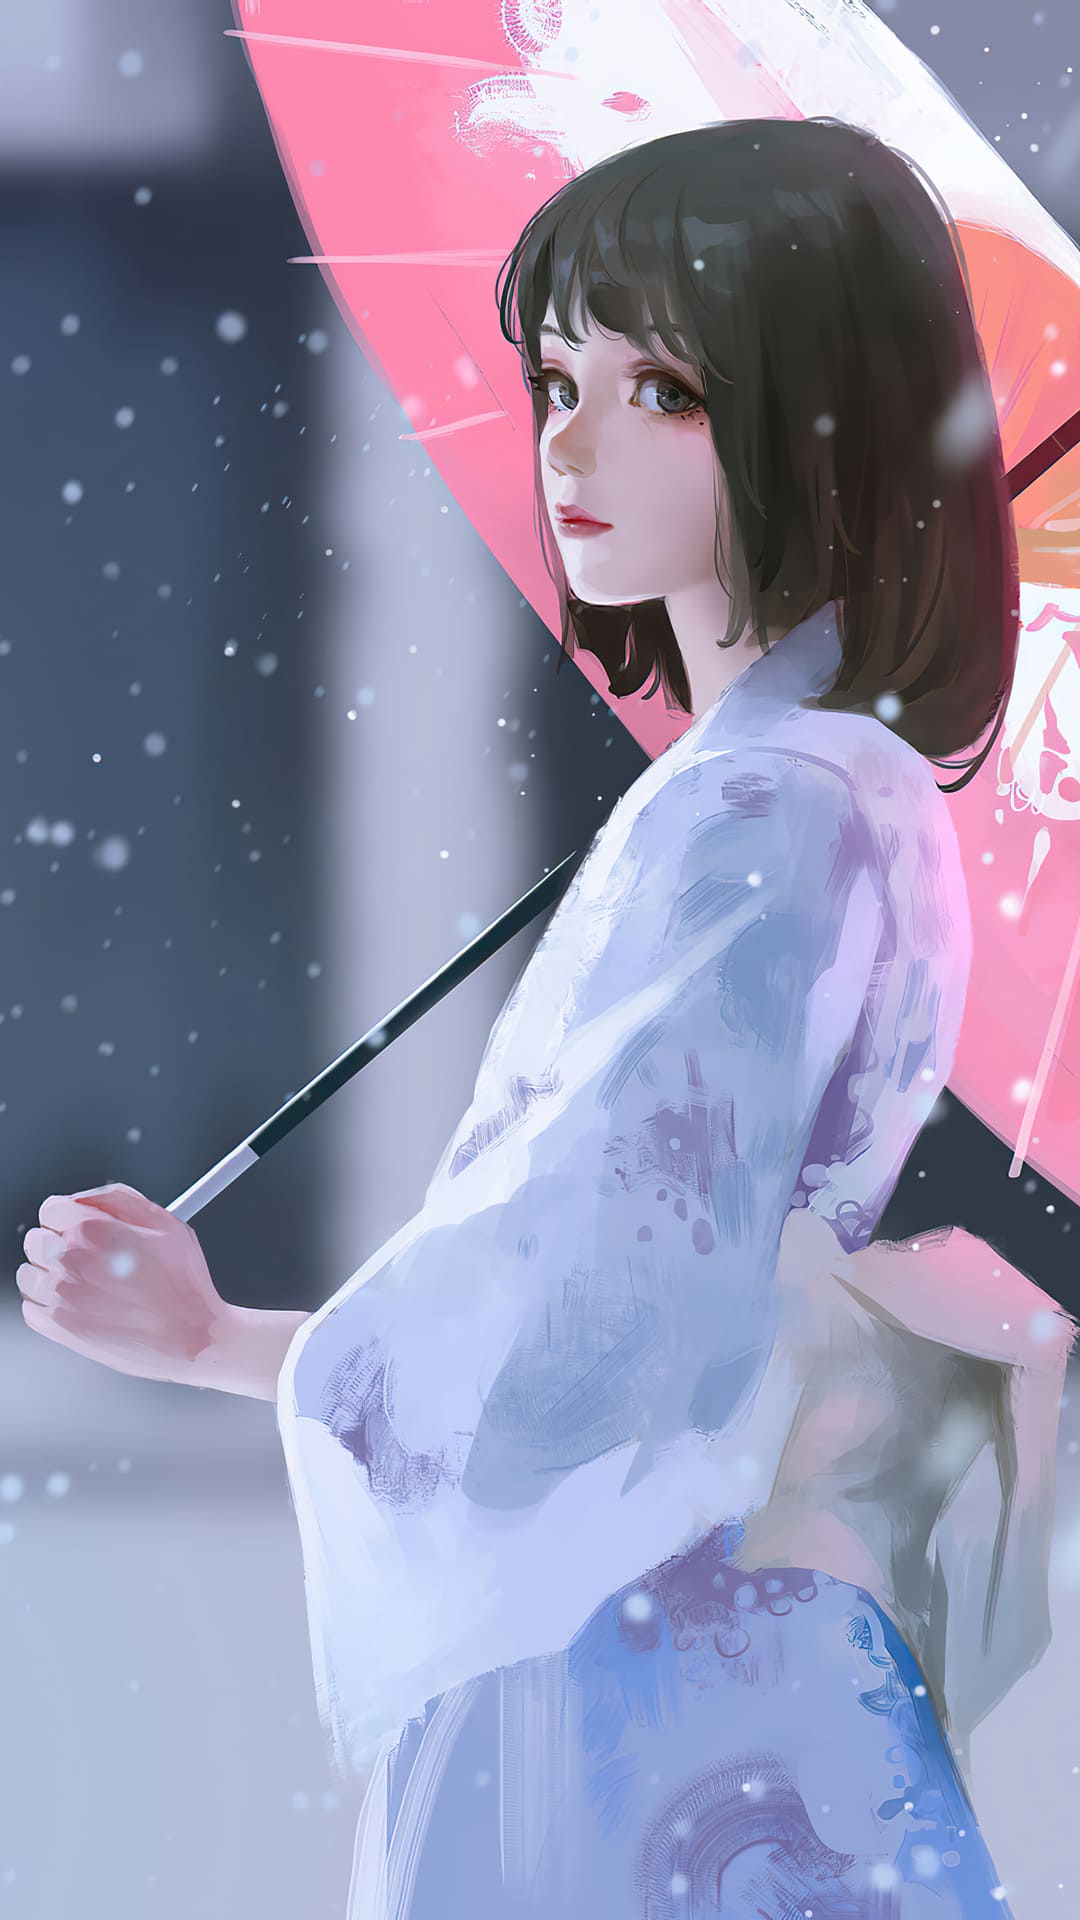 Anime girl Wallpaper - EnJpg